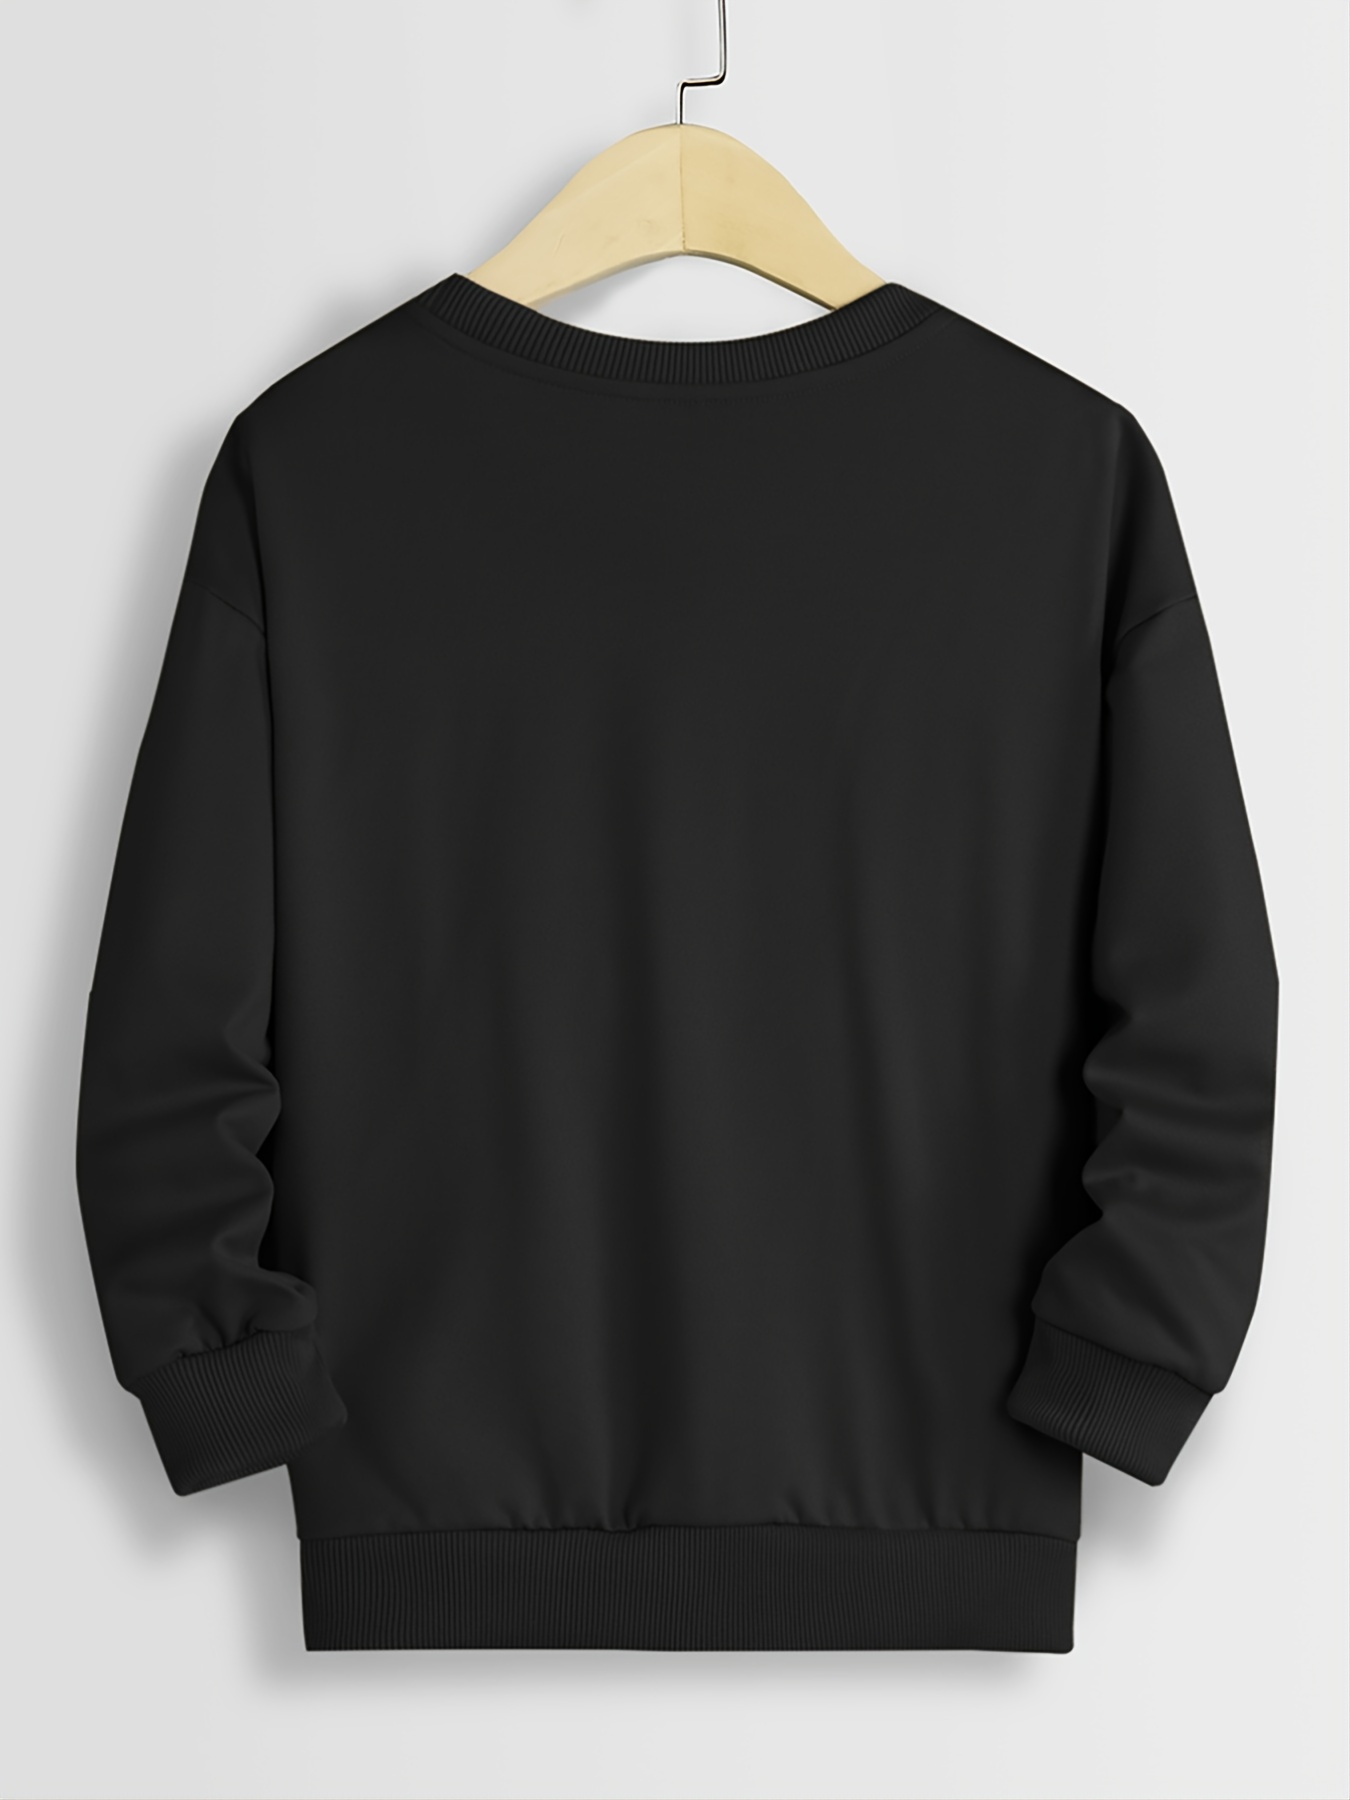 animated blank black sweatshirt